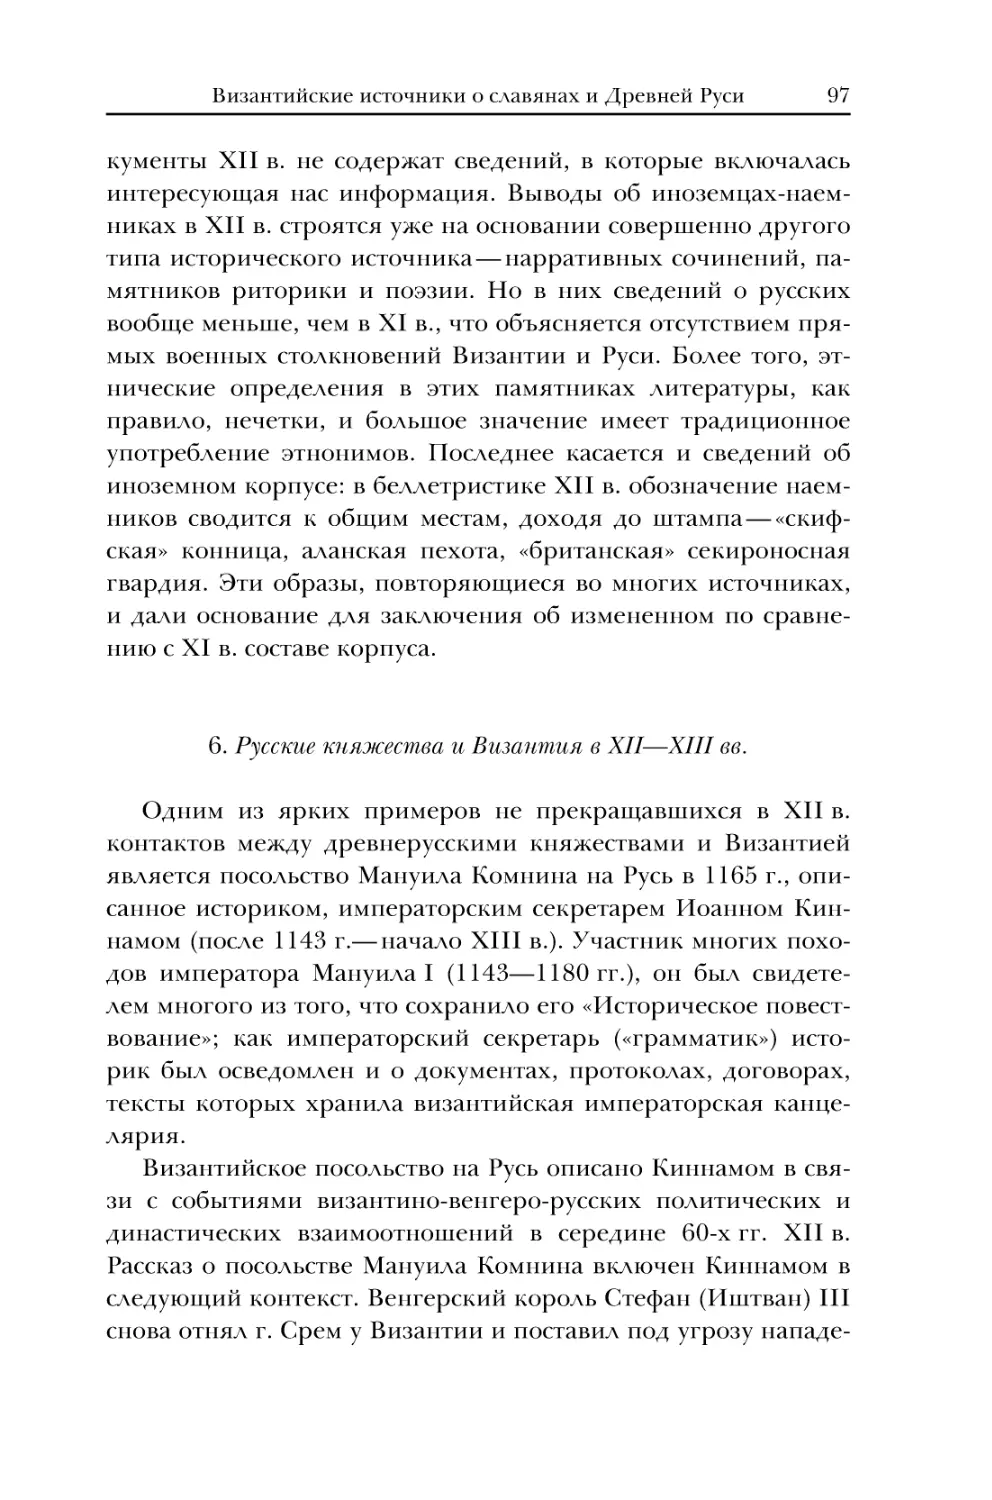 6. Русские княжества и Византия в XII-XIII вв